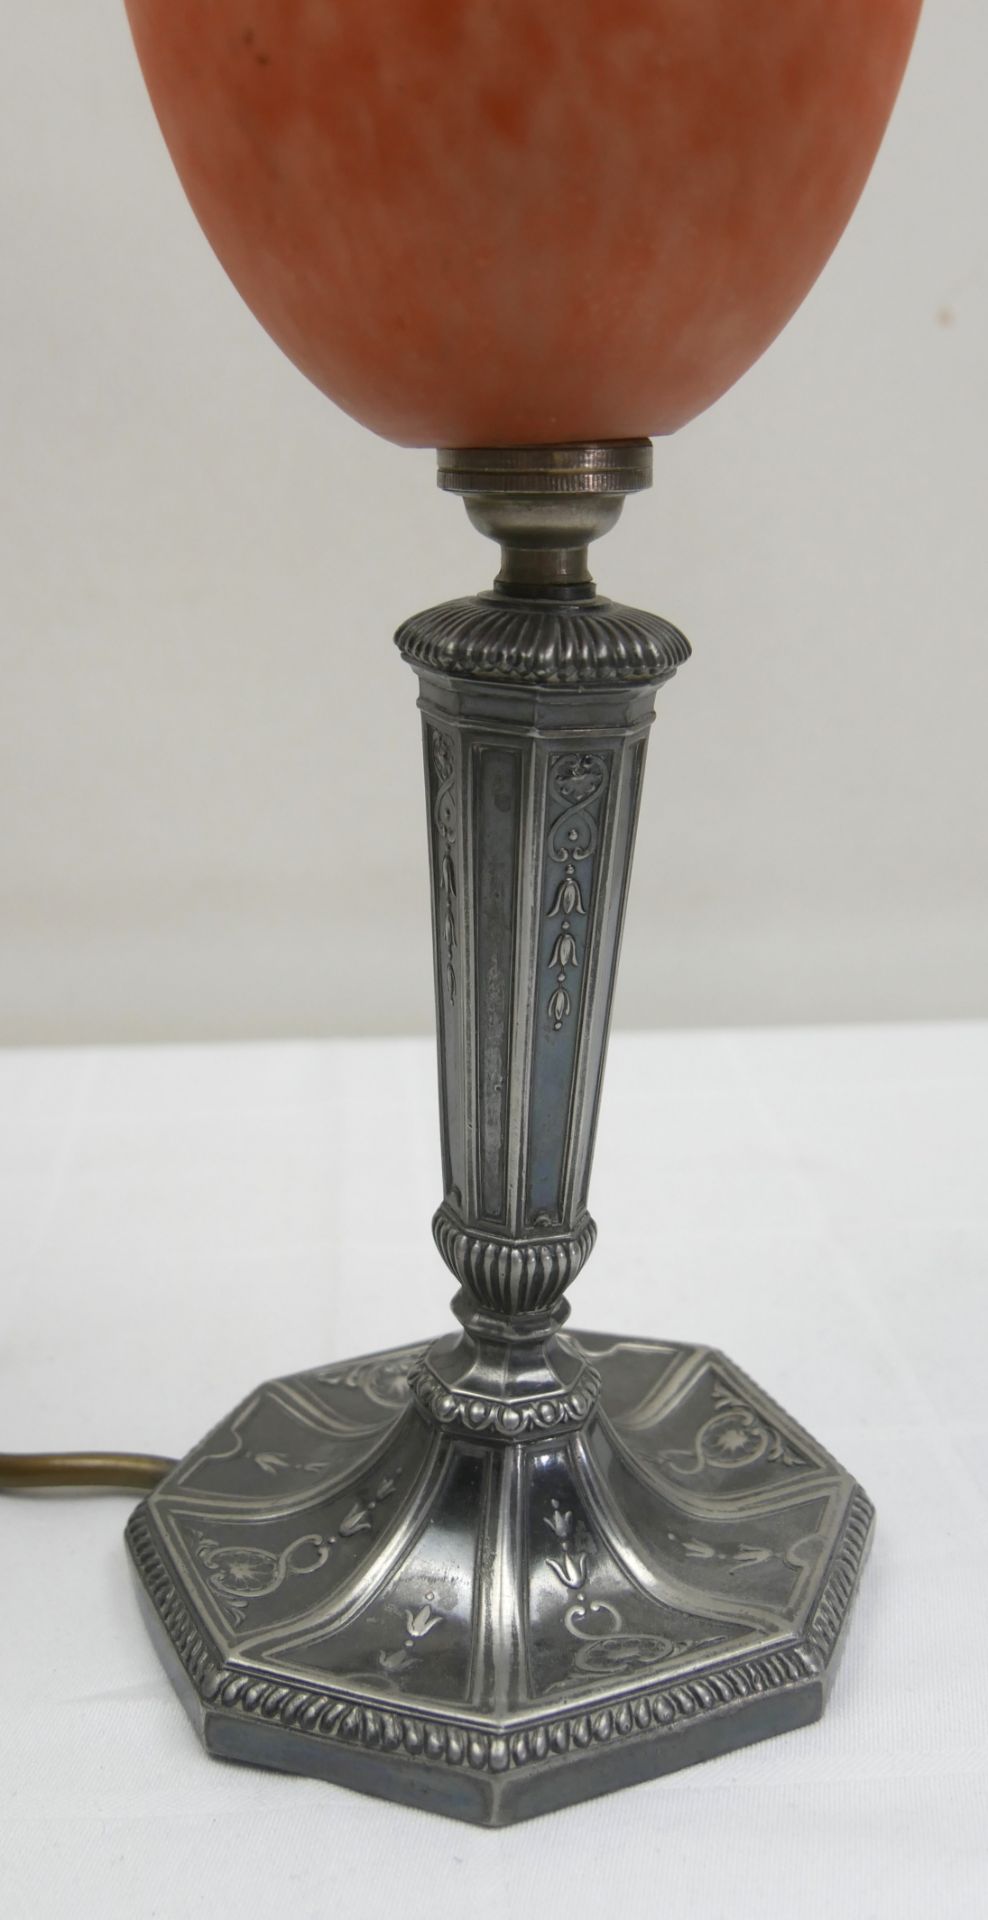 Tischlampe Jugendstil, Metall, Glasschirm. Höhe ca. 31 cm - Bild 3 aus 3